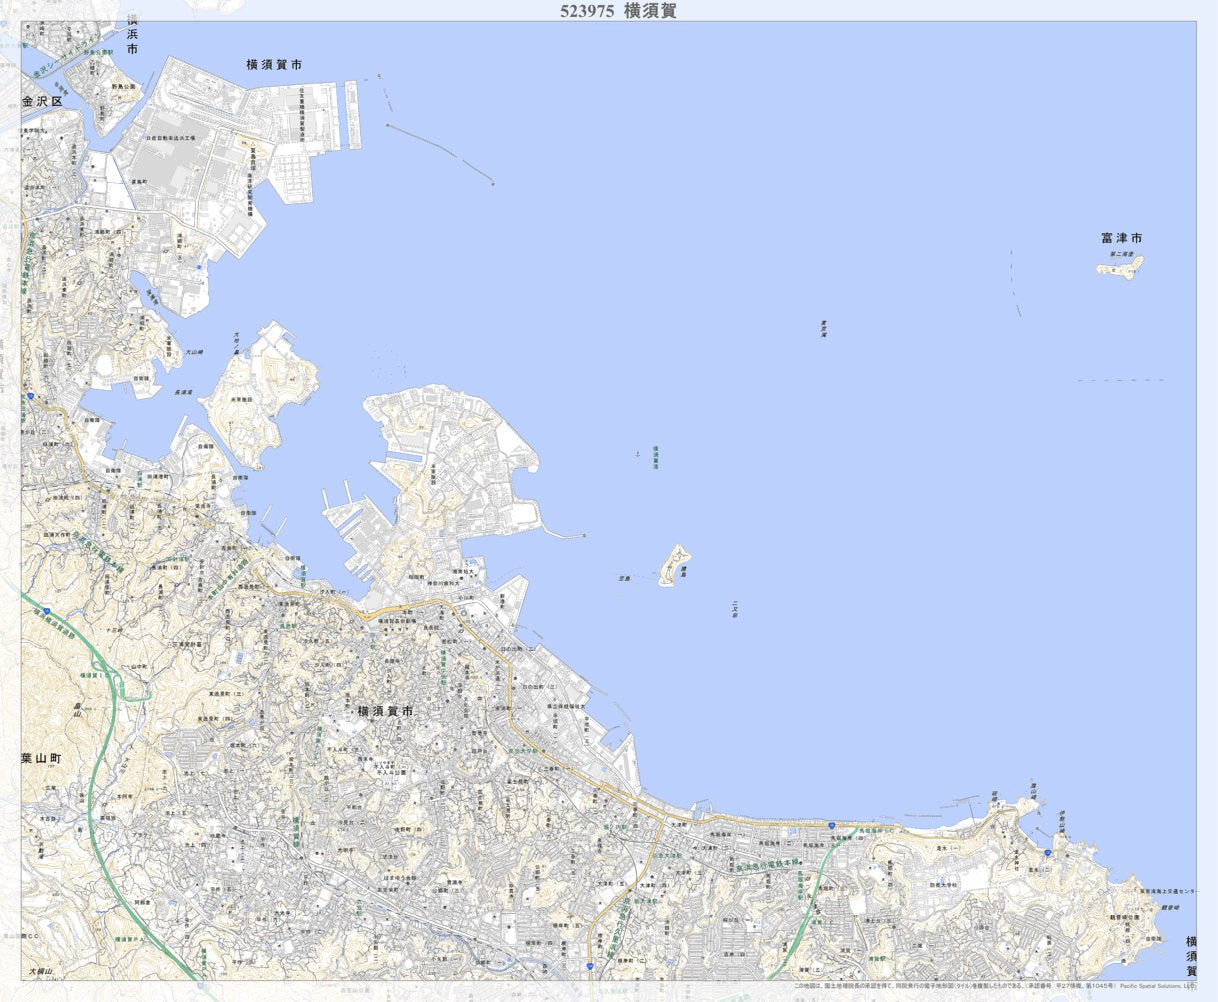 523975 横須賀（よこすか Yokosuka）, 地形図 Map by Pacific Spatial 